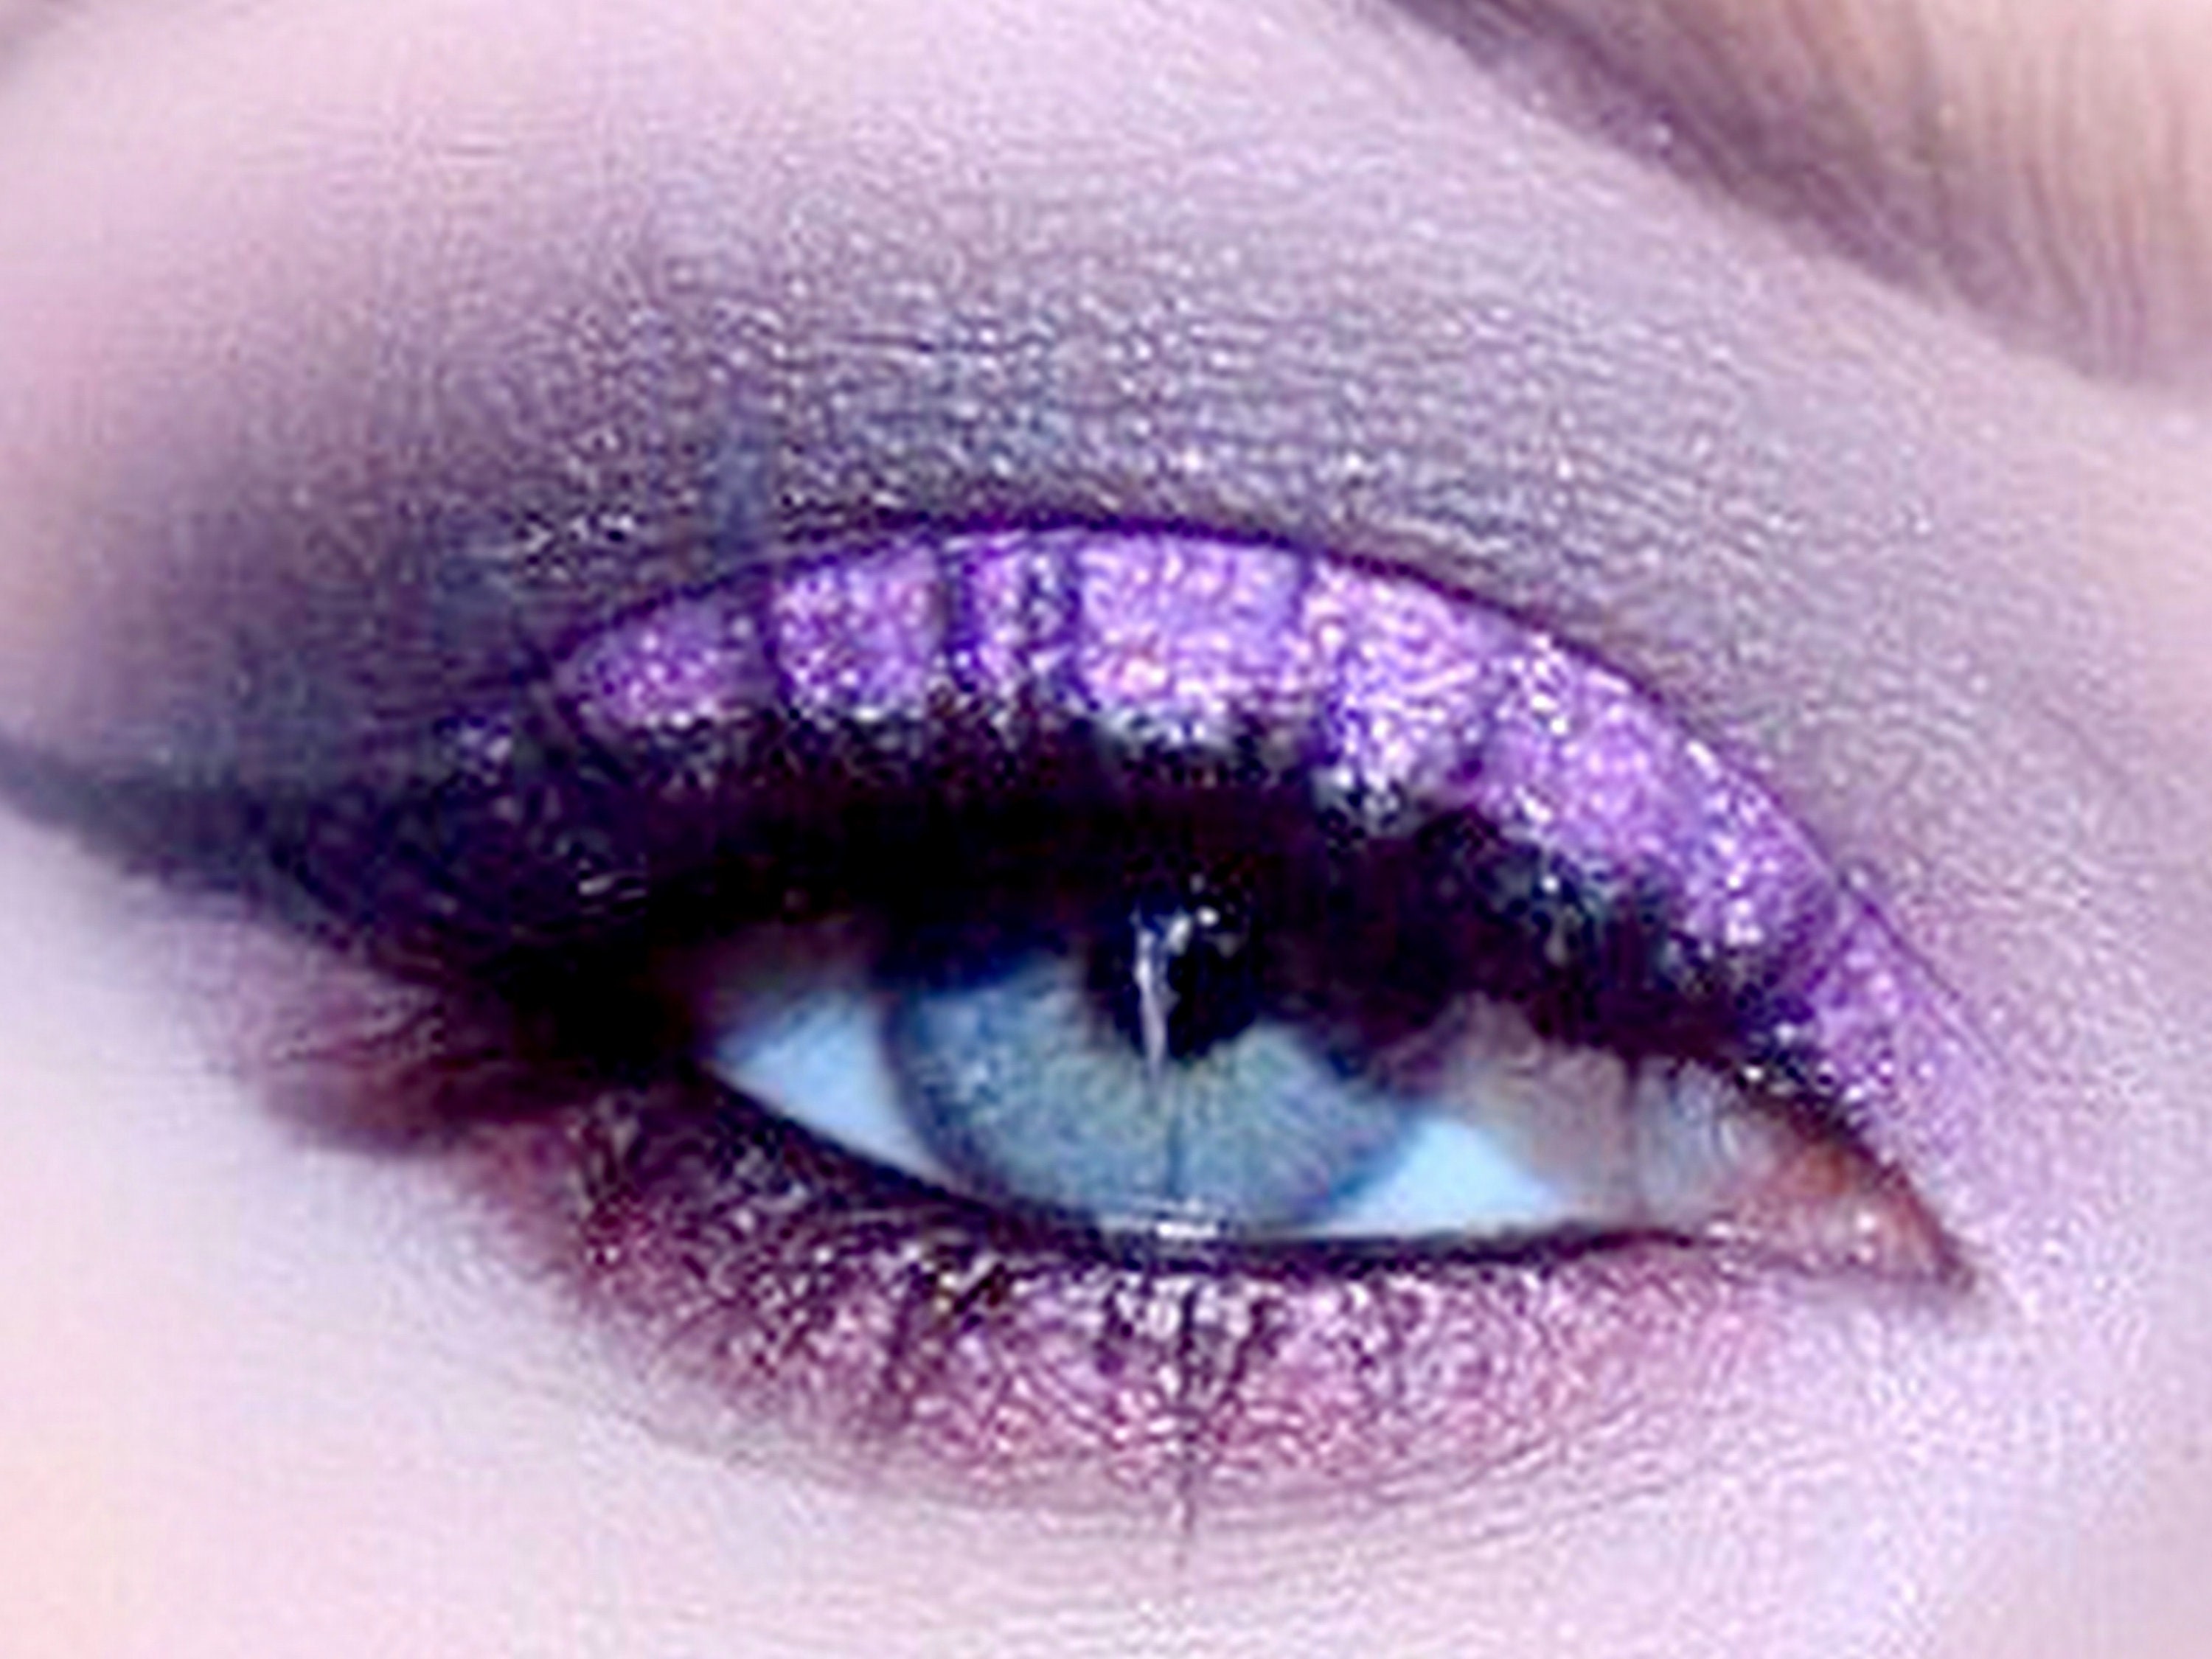 Pudaier Eyes Glitter Laser Holographic Eyeshadow Glamorous